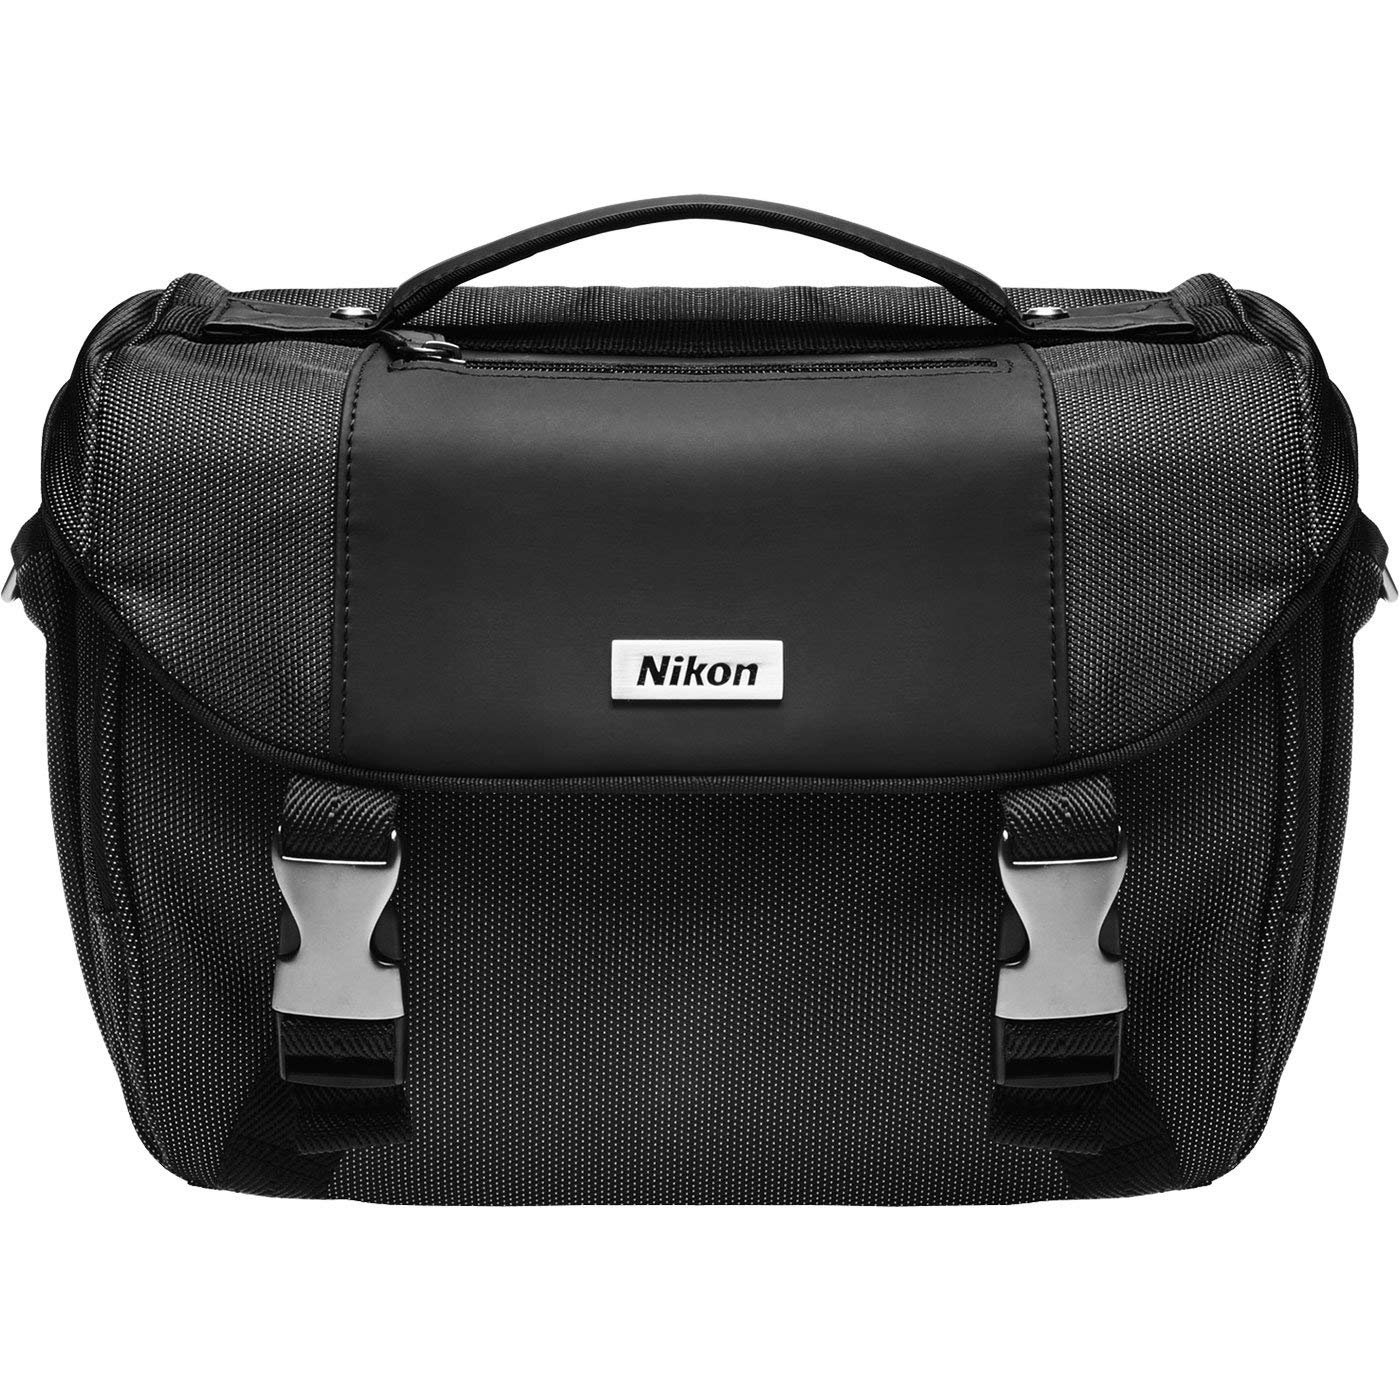 Nikon Deluxe Digital SLR Camera Case - Gadget Bag for D4s, D800, D610, D7100, D7000, D5500, D5300, D5200, D5100, D3300, D3200, D3100